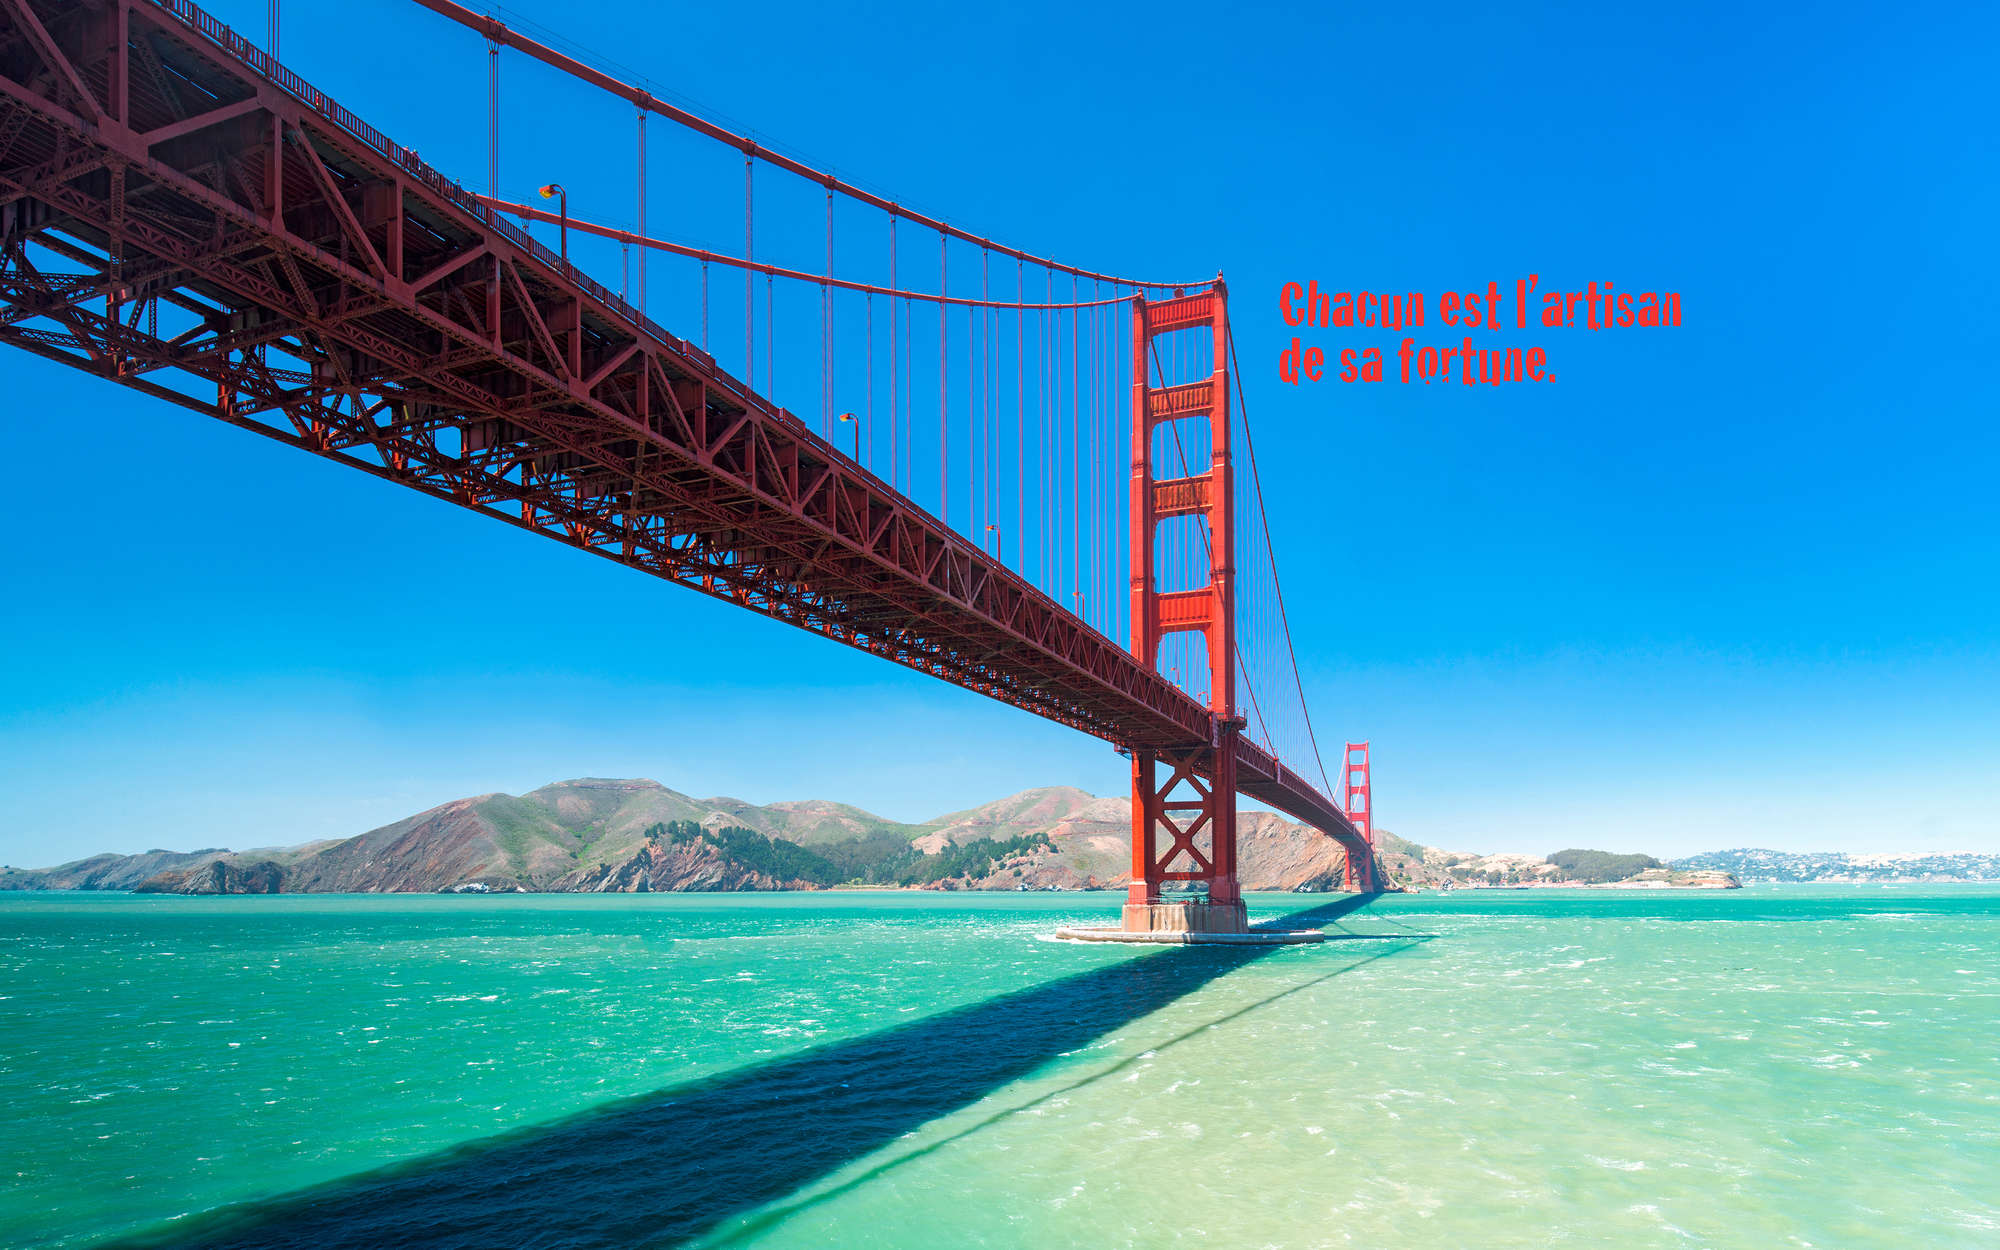             papiers peints à impression numérique Golden Gate Bridge avec inscription en français - Premium intissé lisse
        